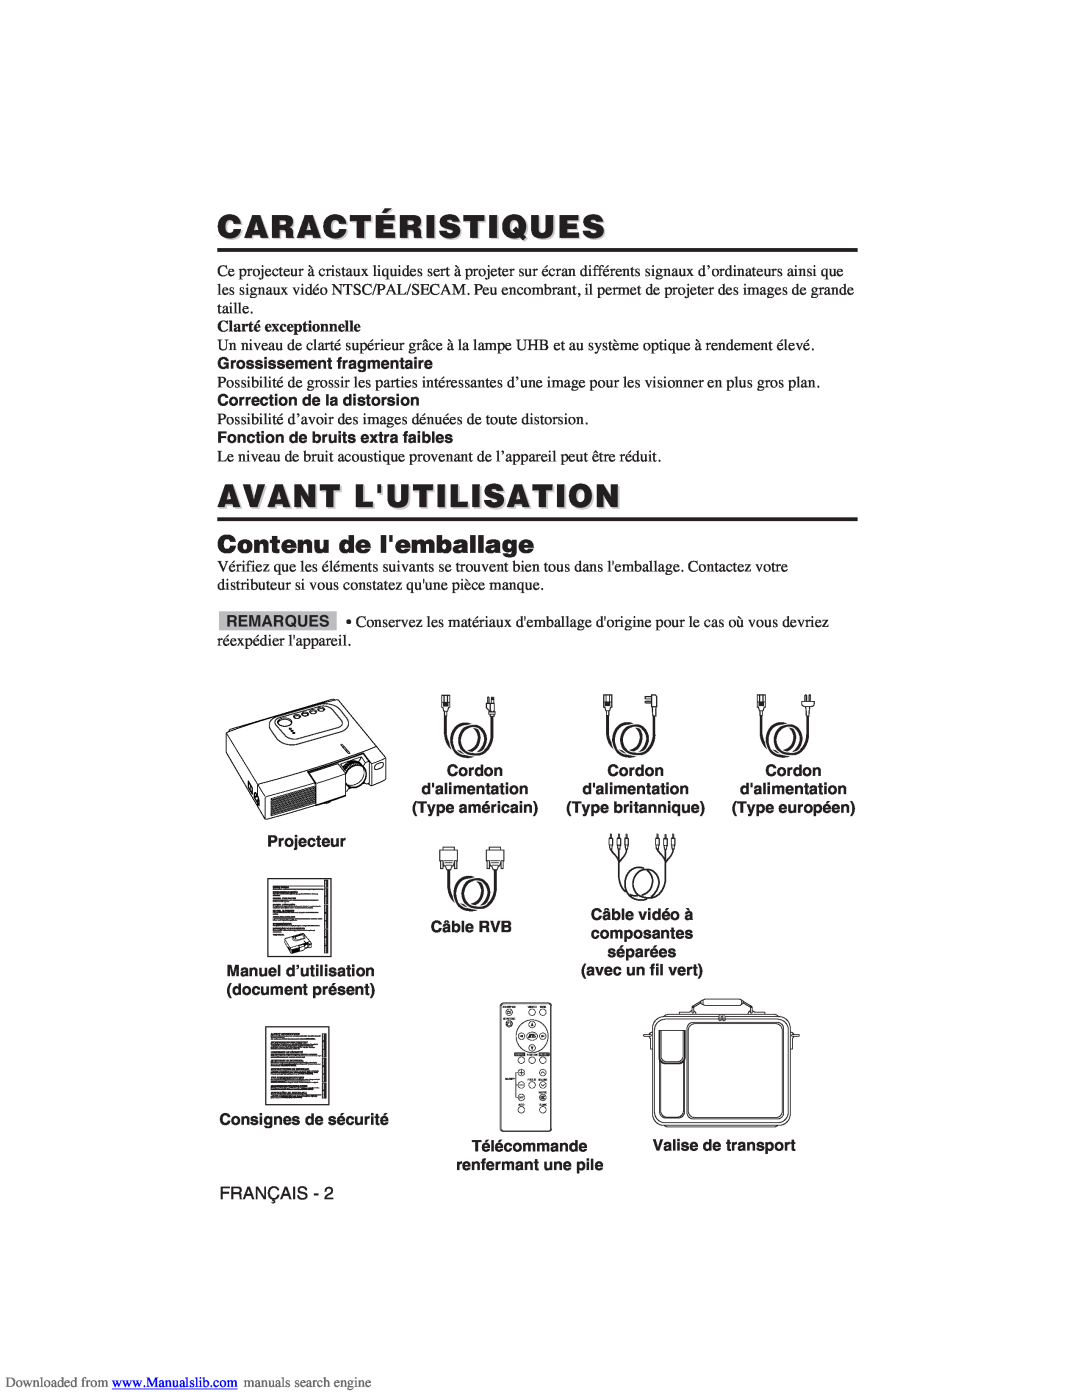 Hitachi CP-X275W user manual Caractéristiques, Avant Lutilisation, Contenu de lemballage, Clarté exceptionnelle 